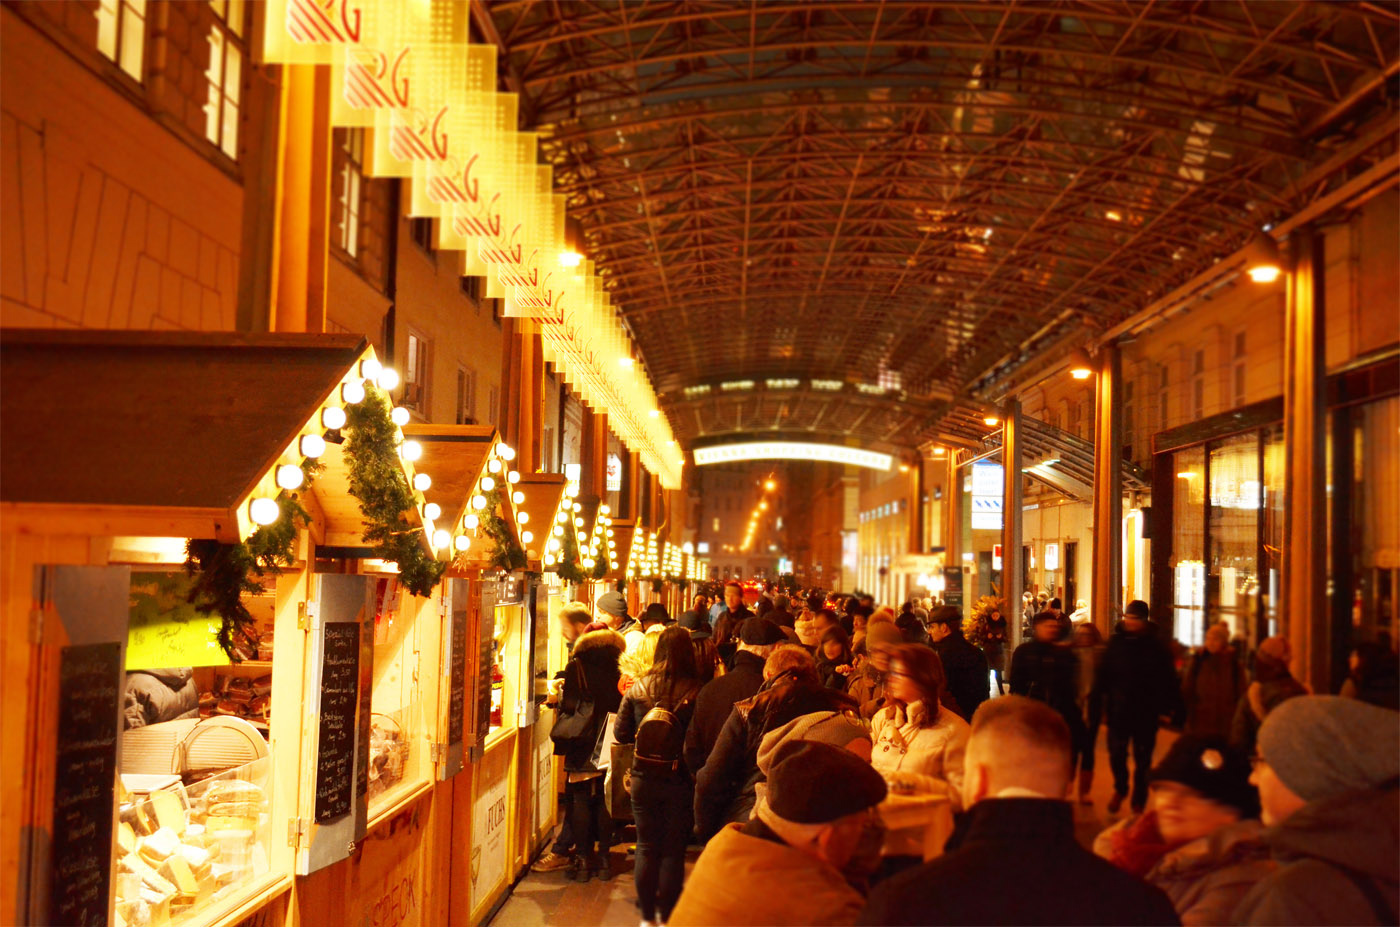 Adventgenussmarkt bei der Wiener Staatsoper